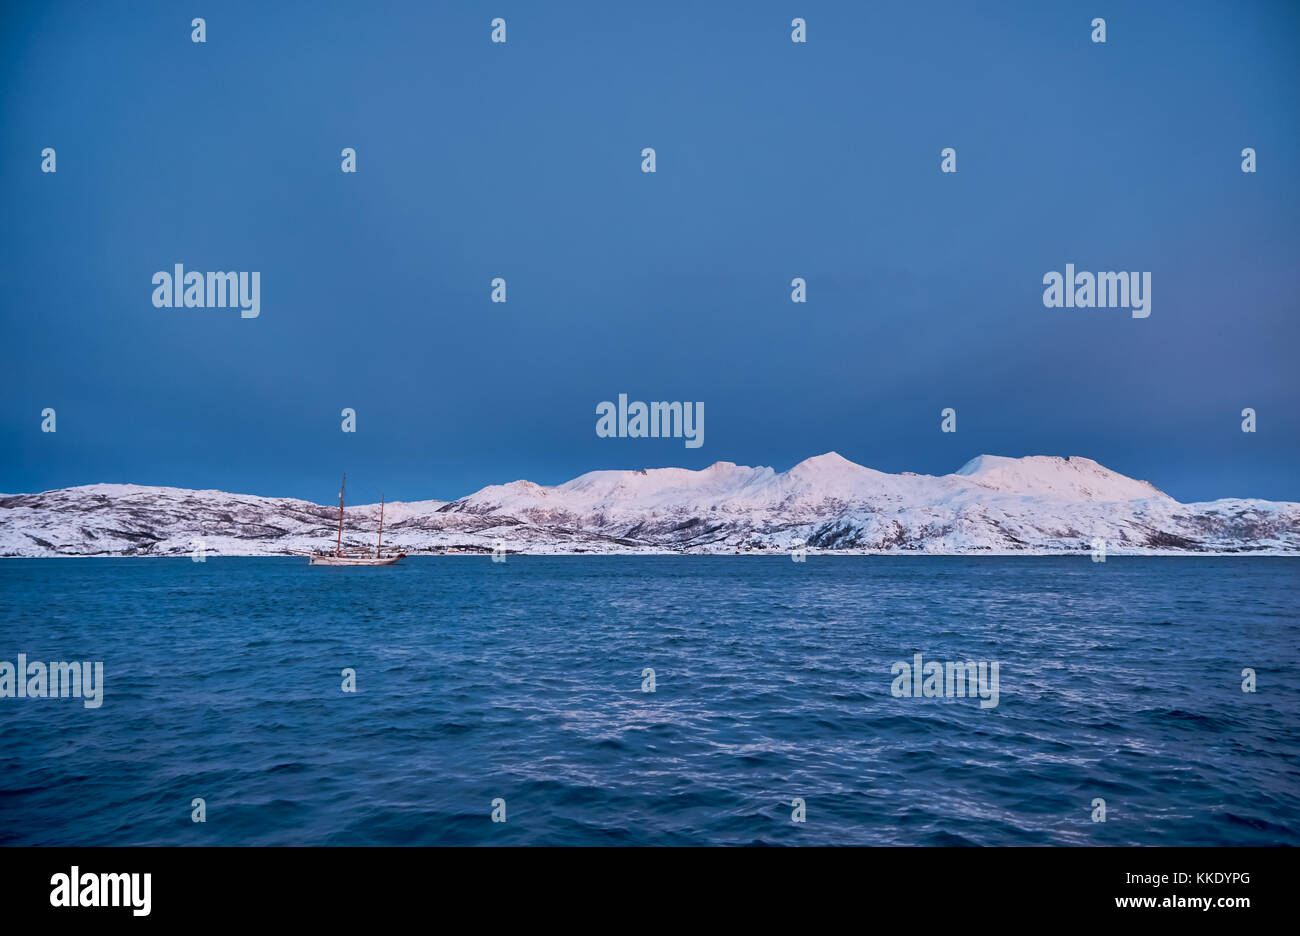 Alba sul fiordo con montagne coperte di neve e paesaggio invernale e sailship vicino a Tromso, Troms, Norvegia del nord, Europa Foto Stock